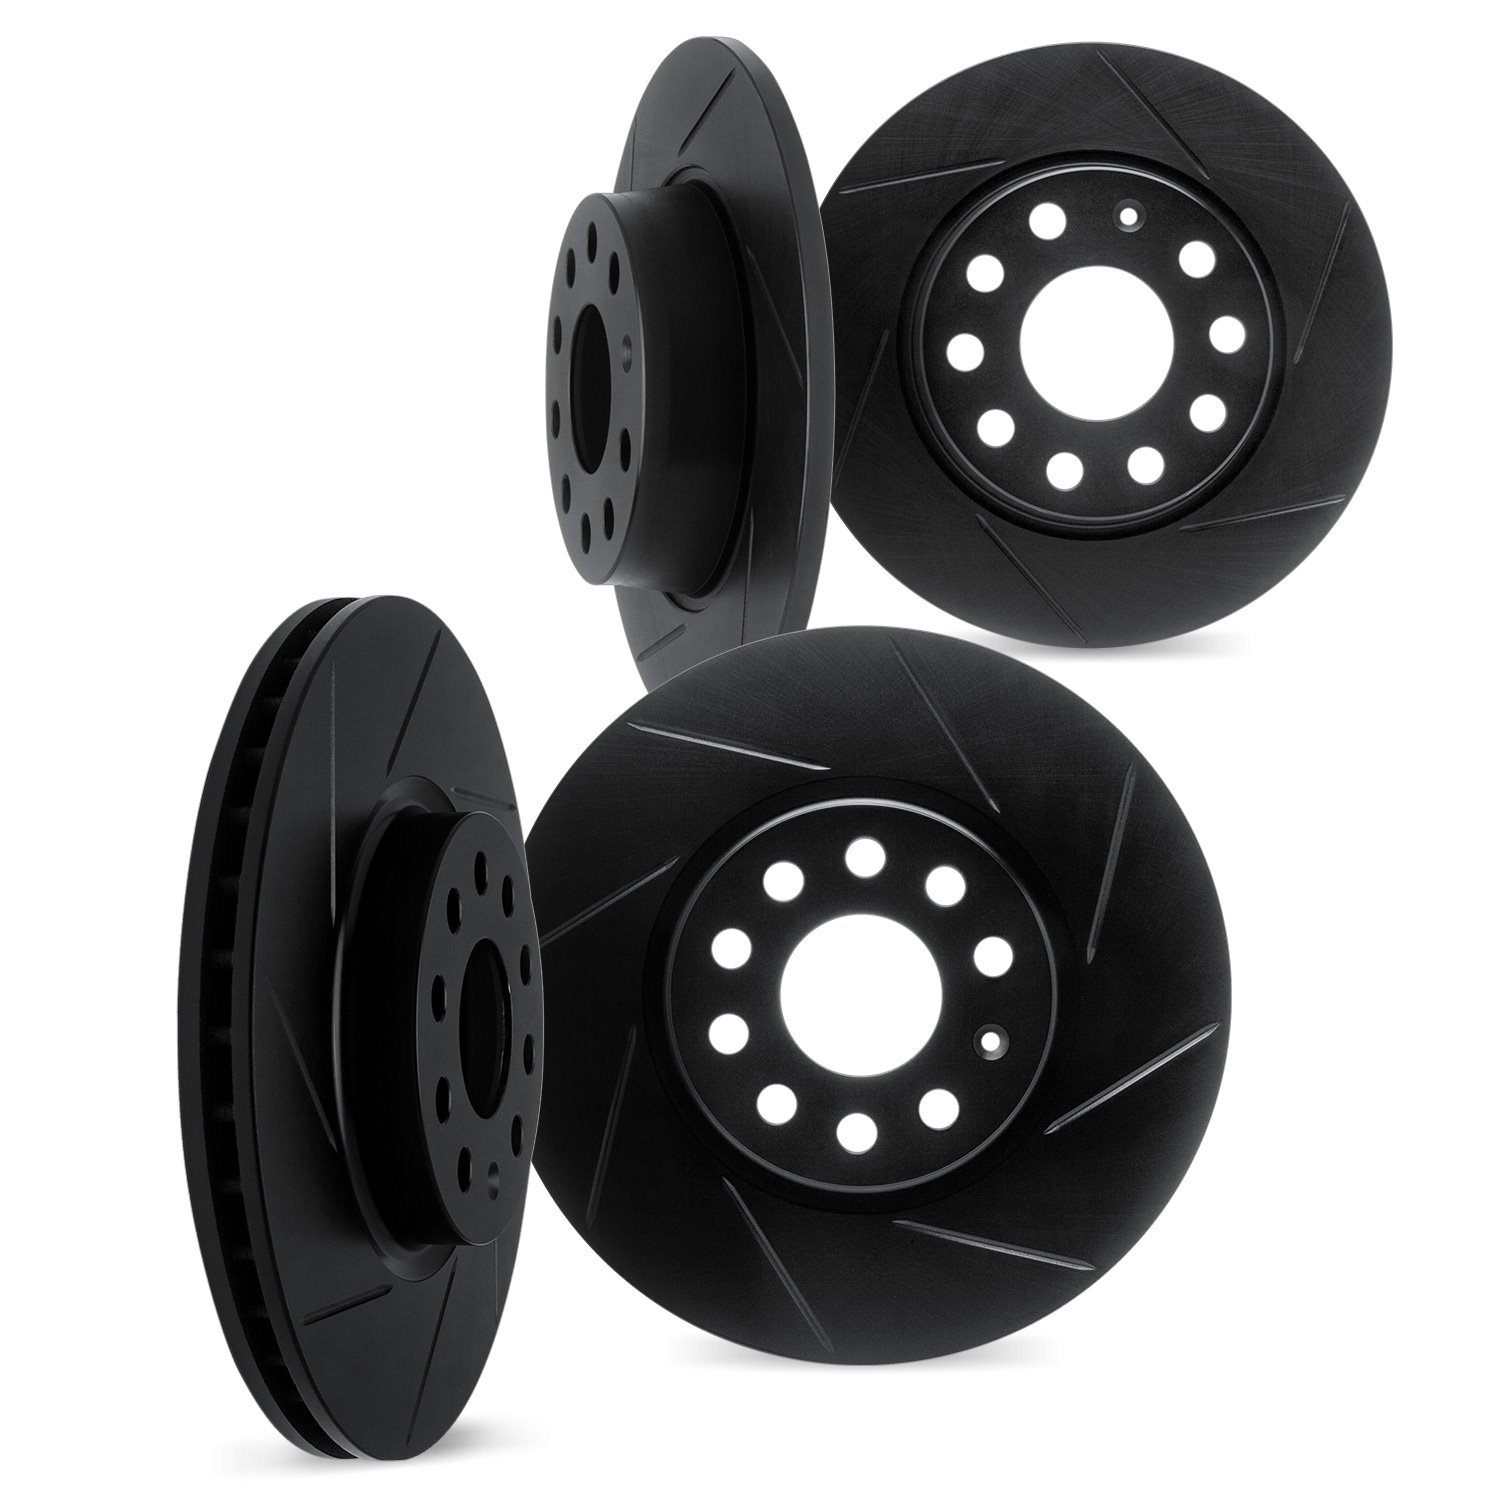 3004-03026 Slotted Brake Rotors [Black], Fits Select Kia/Hyundai/Genesis, Position: Front and Rear